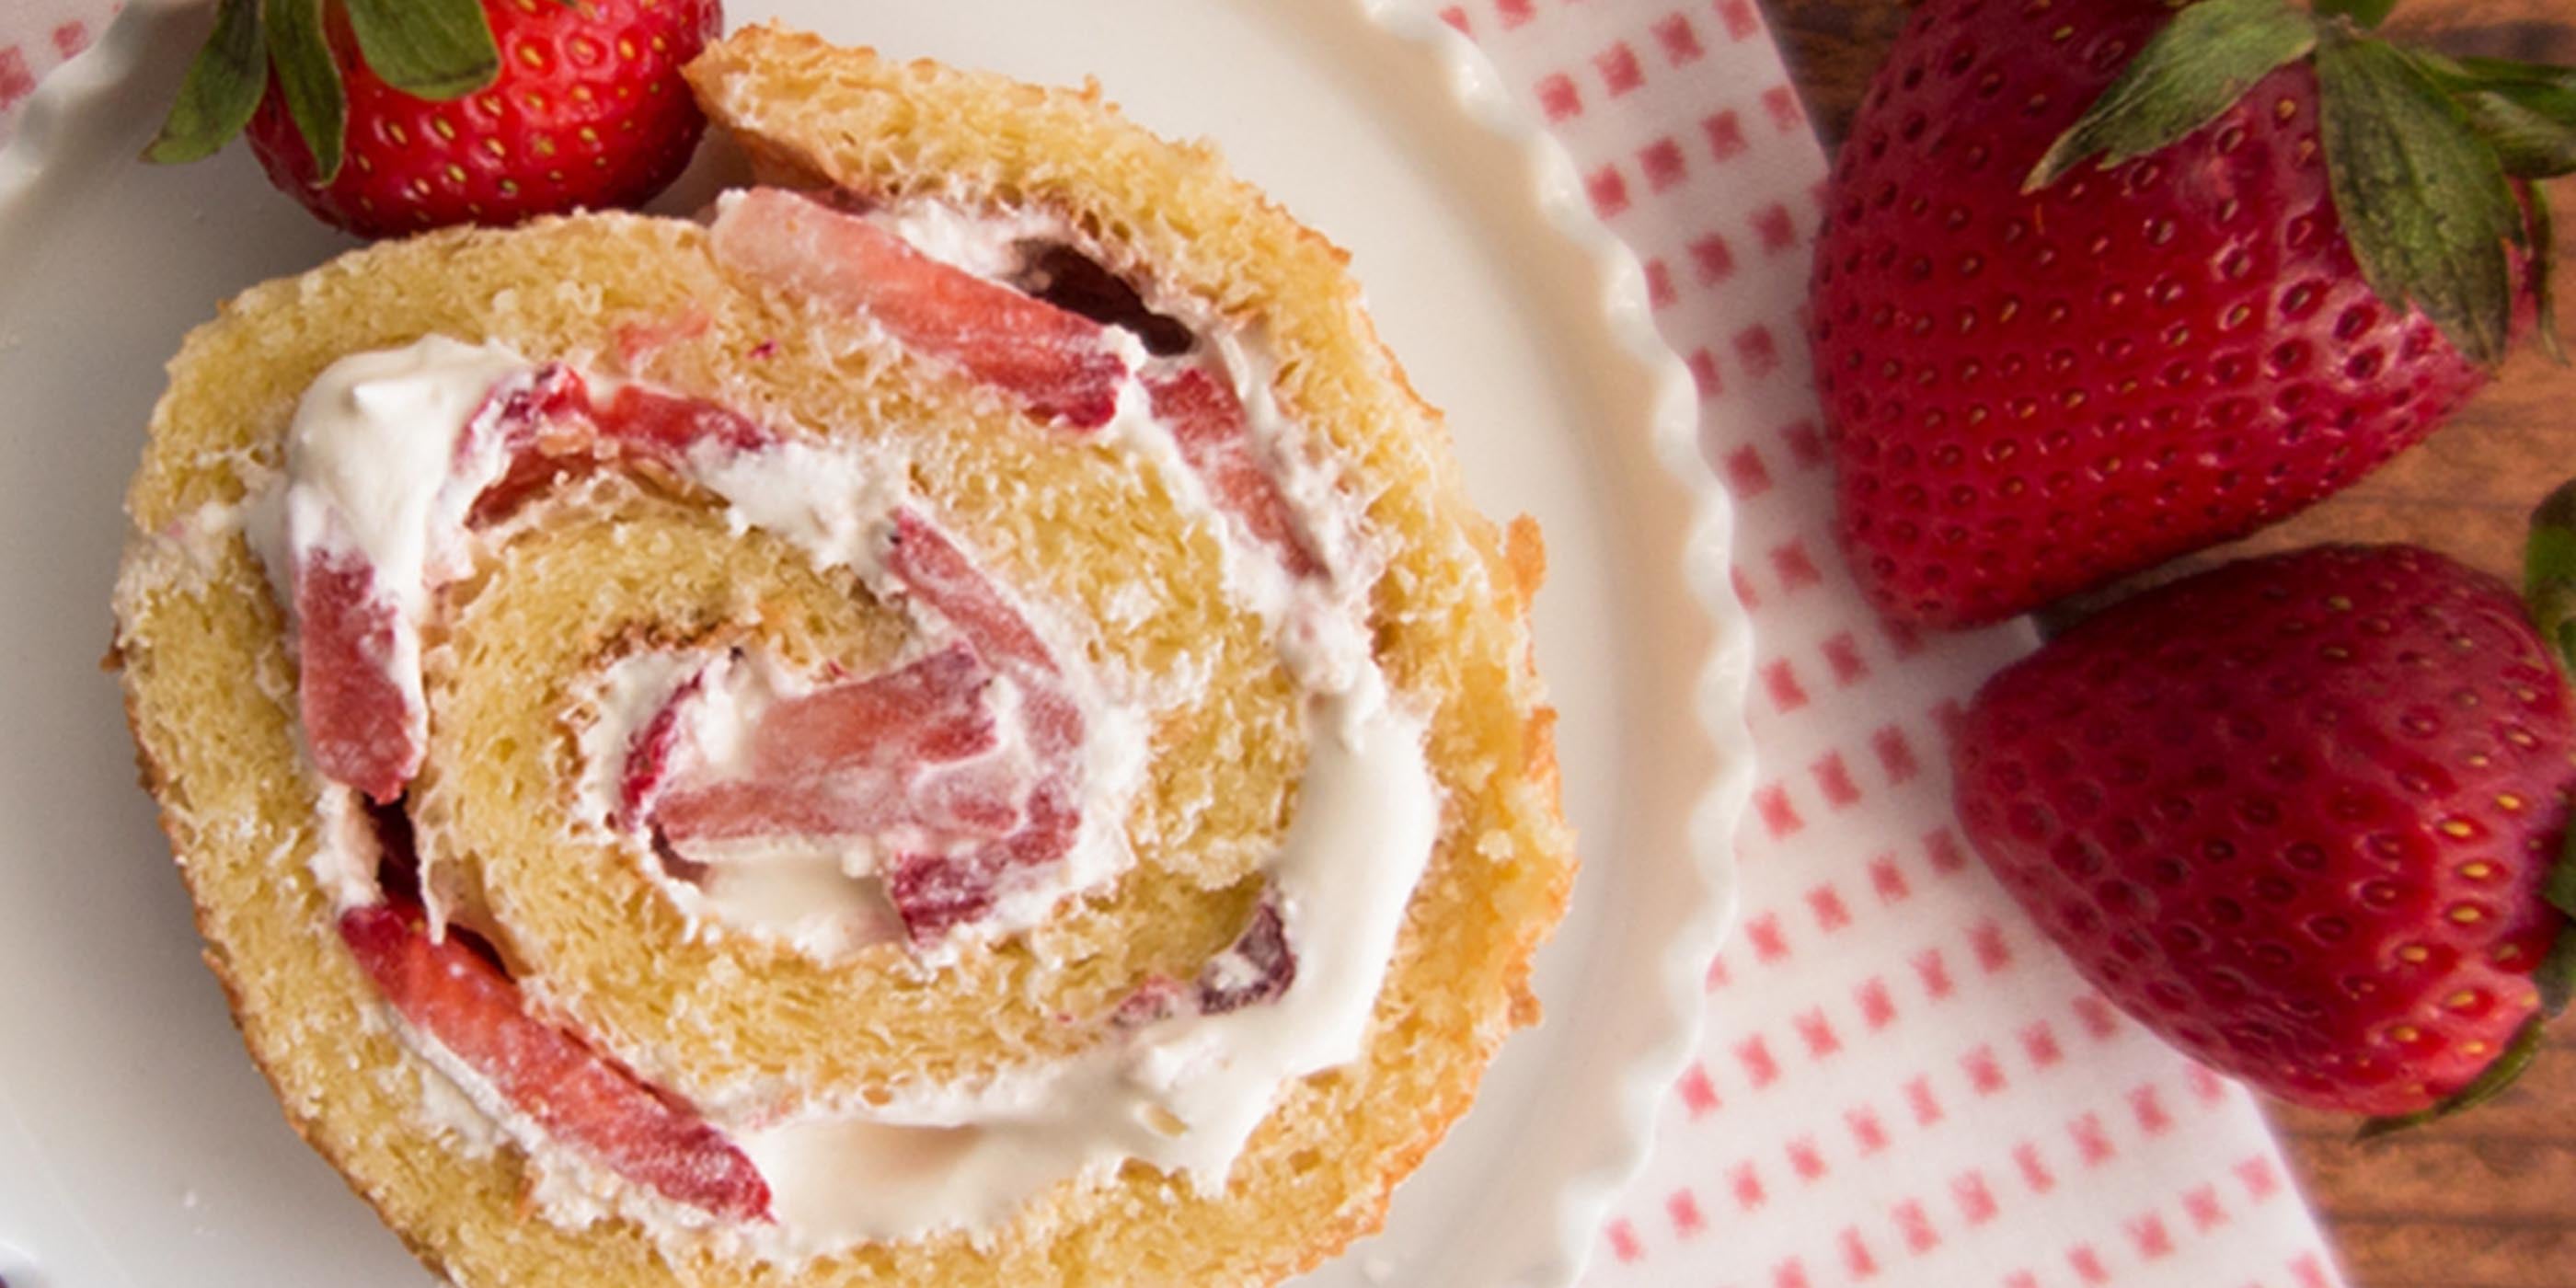 Rouleau de gâteau aux fraises et à la crème